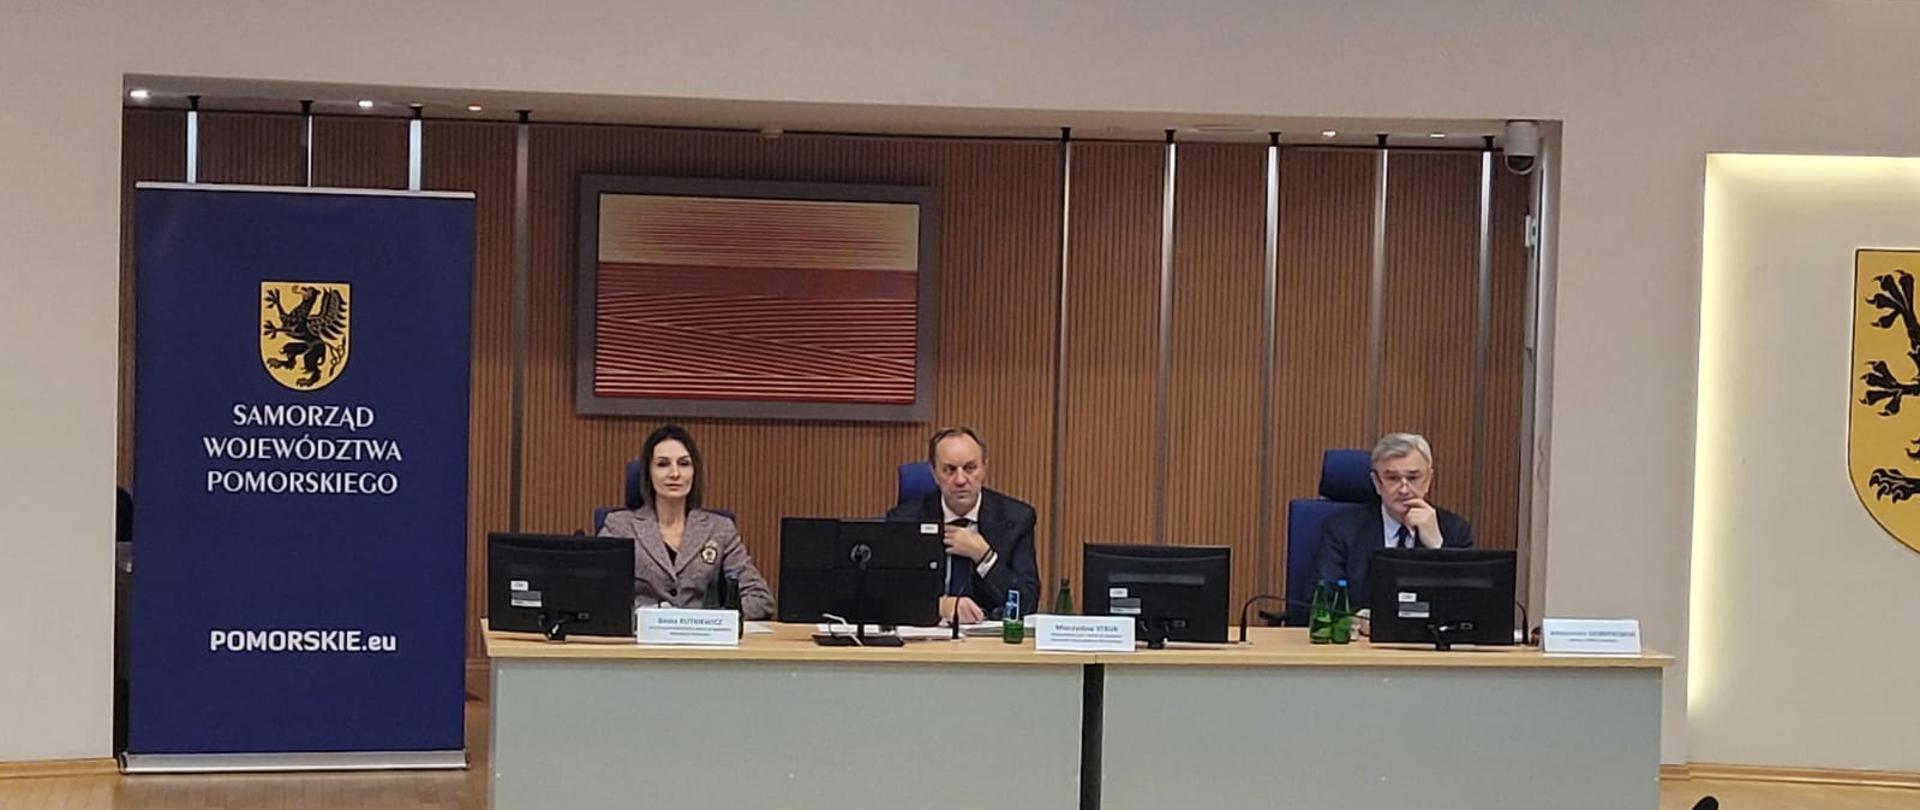 posiedzenie Wojewódzkiej Rady Dialogu Społecznego, sala, cztery postaci siedzące za biurkiem